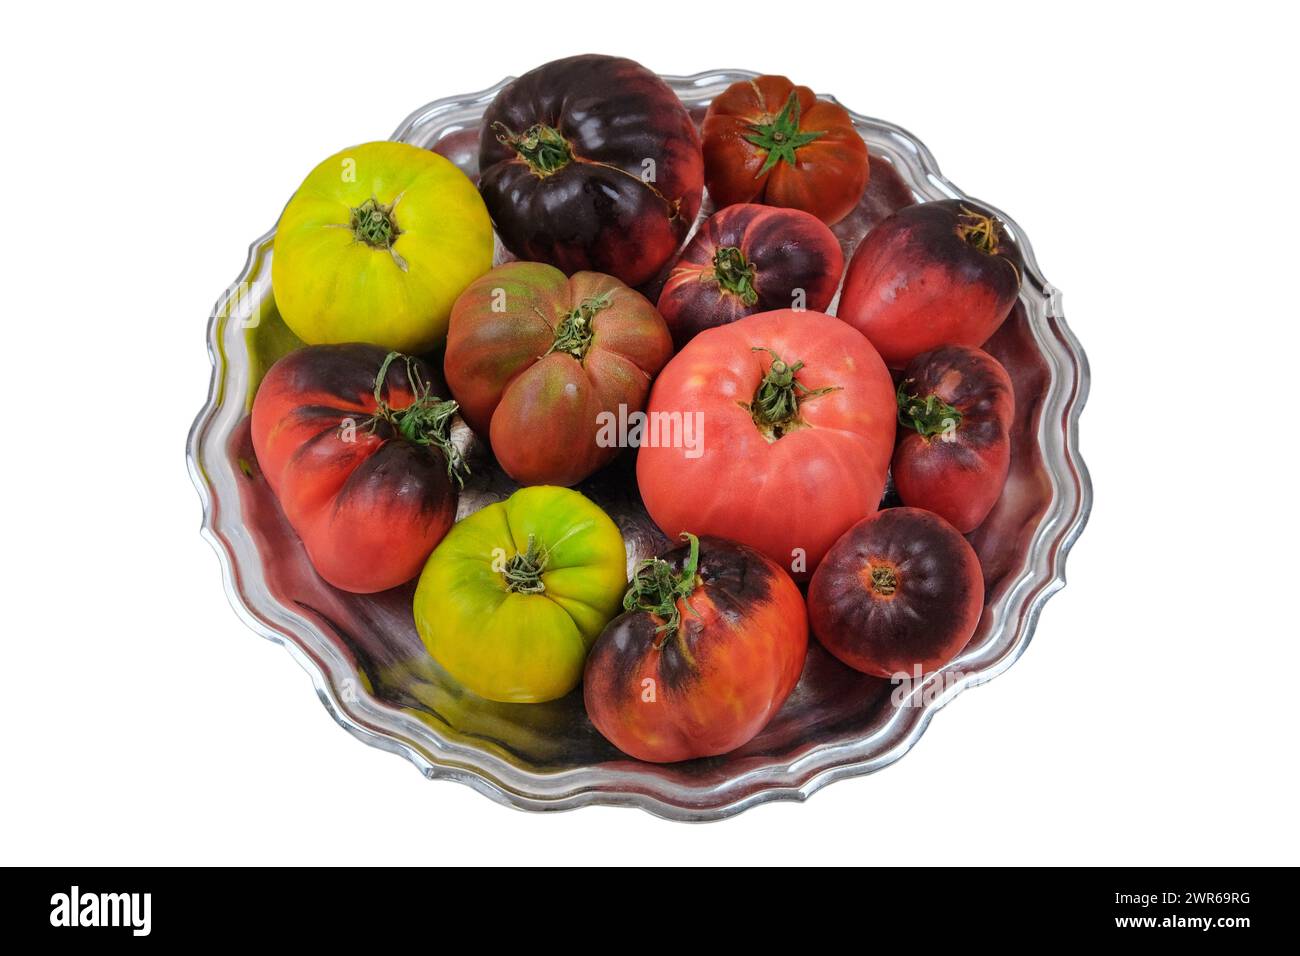 Les tomates dans une plaque métallique isolent sur fond blanc. Tomates de variété dans un bol rustique. Banque D'Images